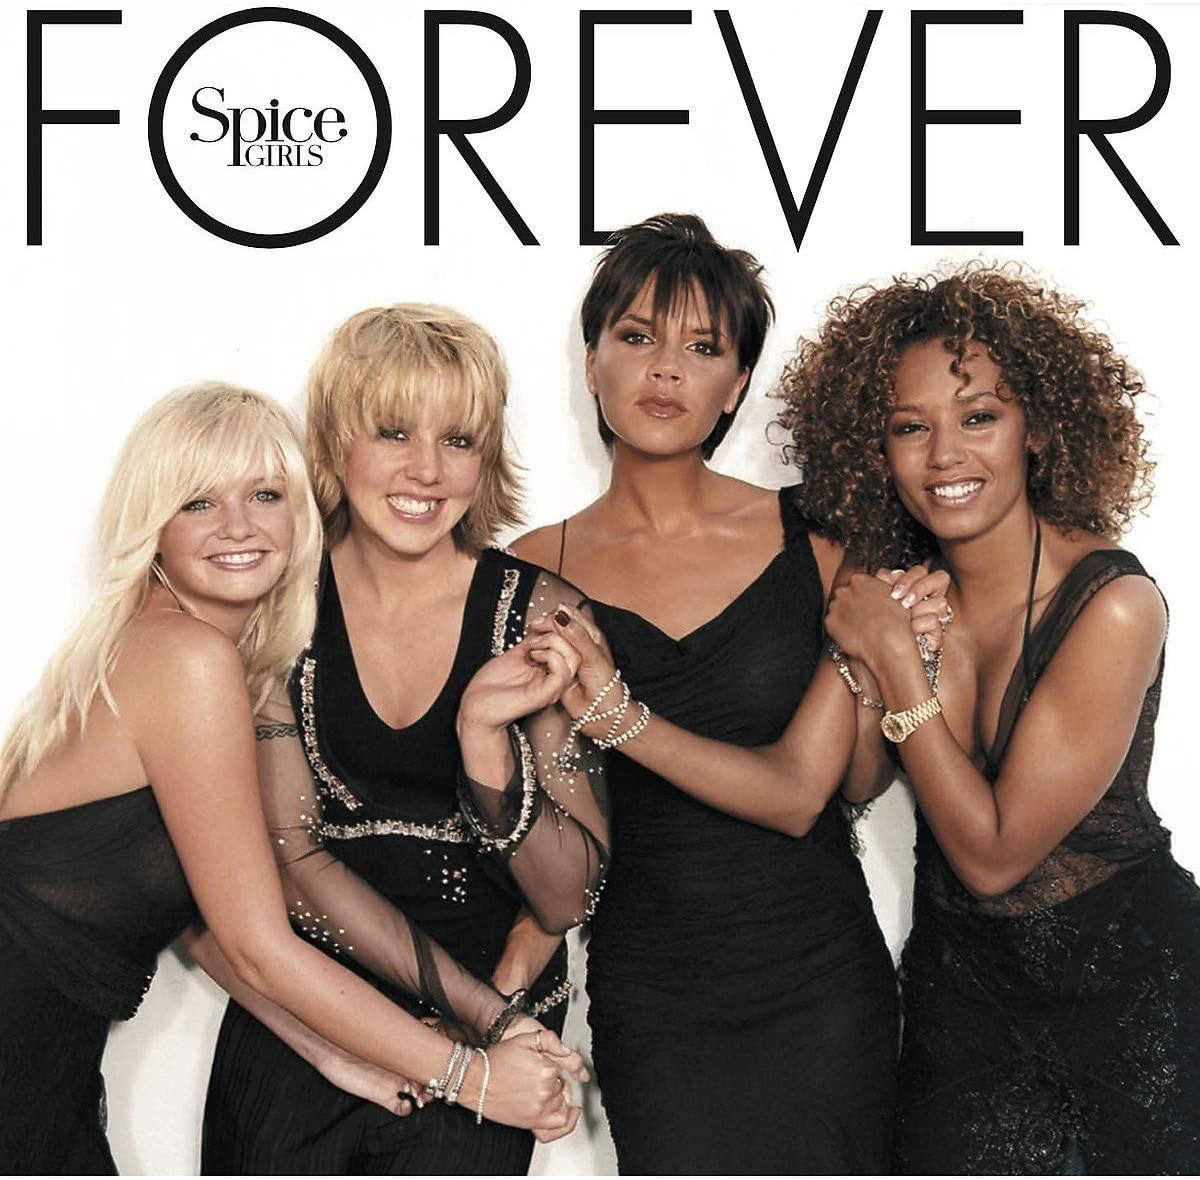 Spice Girls - Forever (2000) Lp